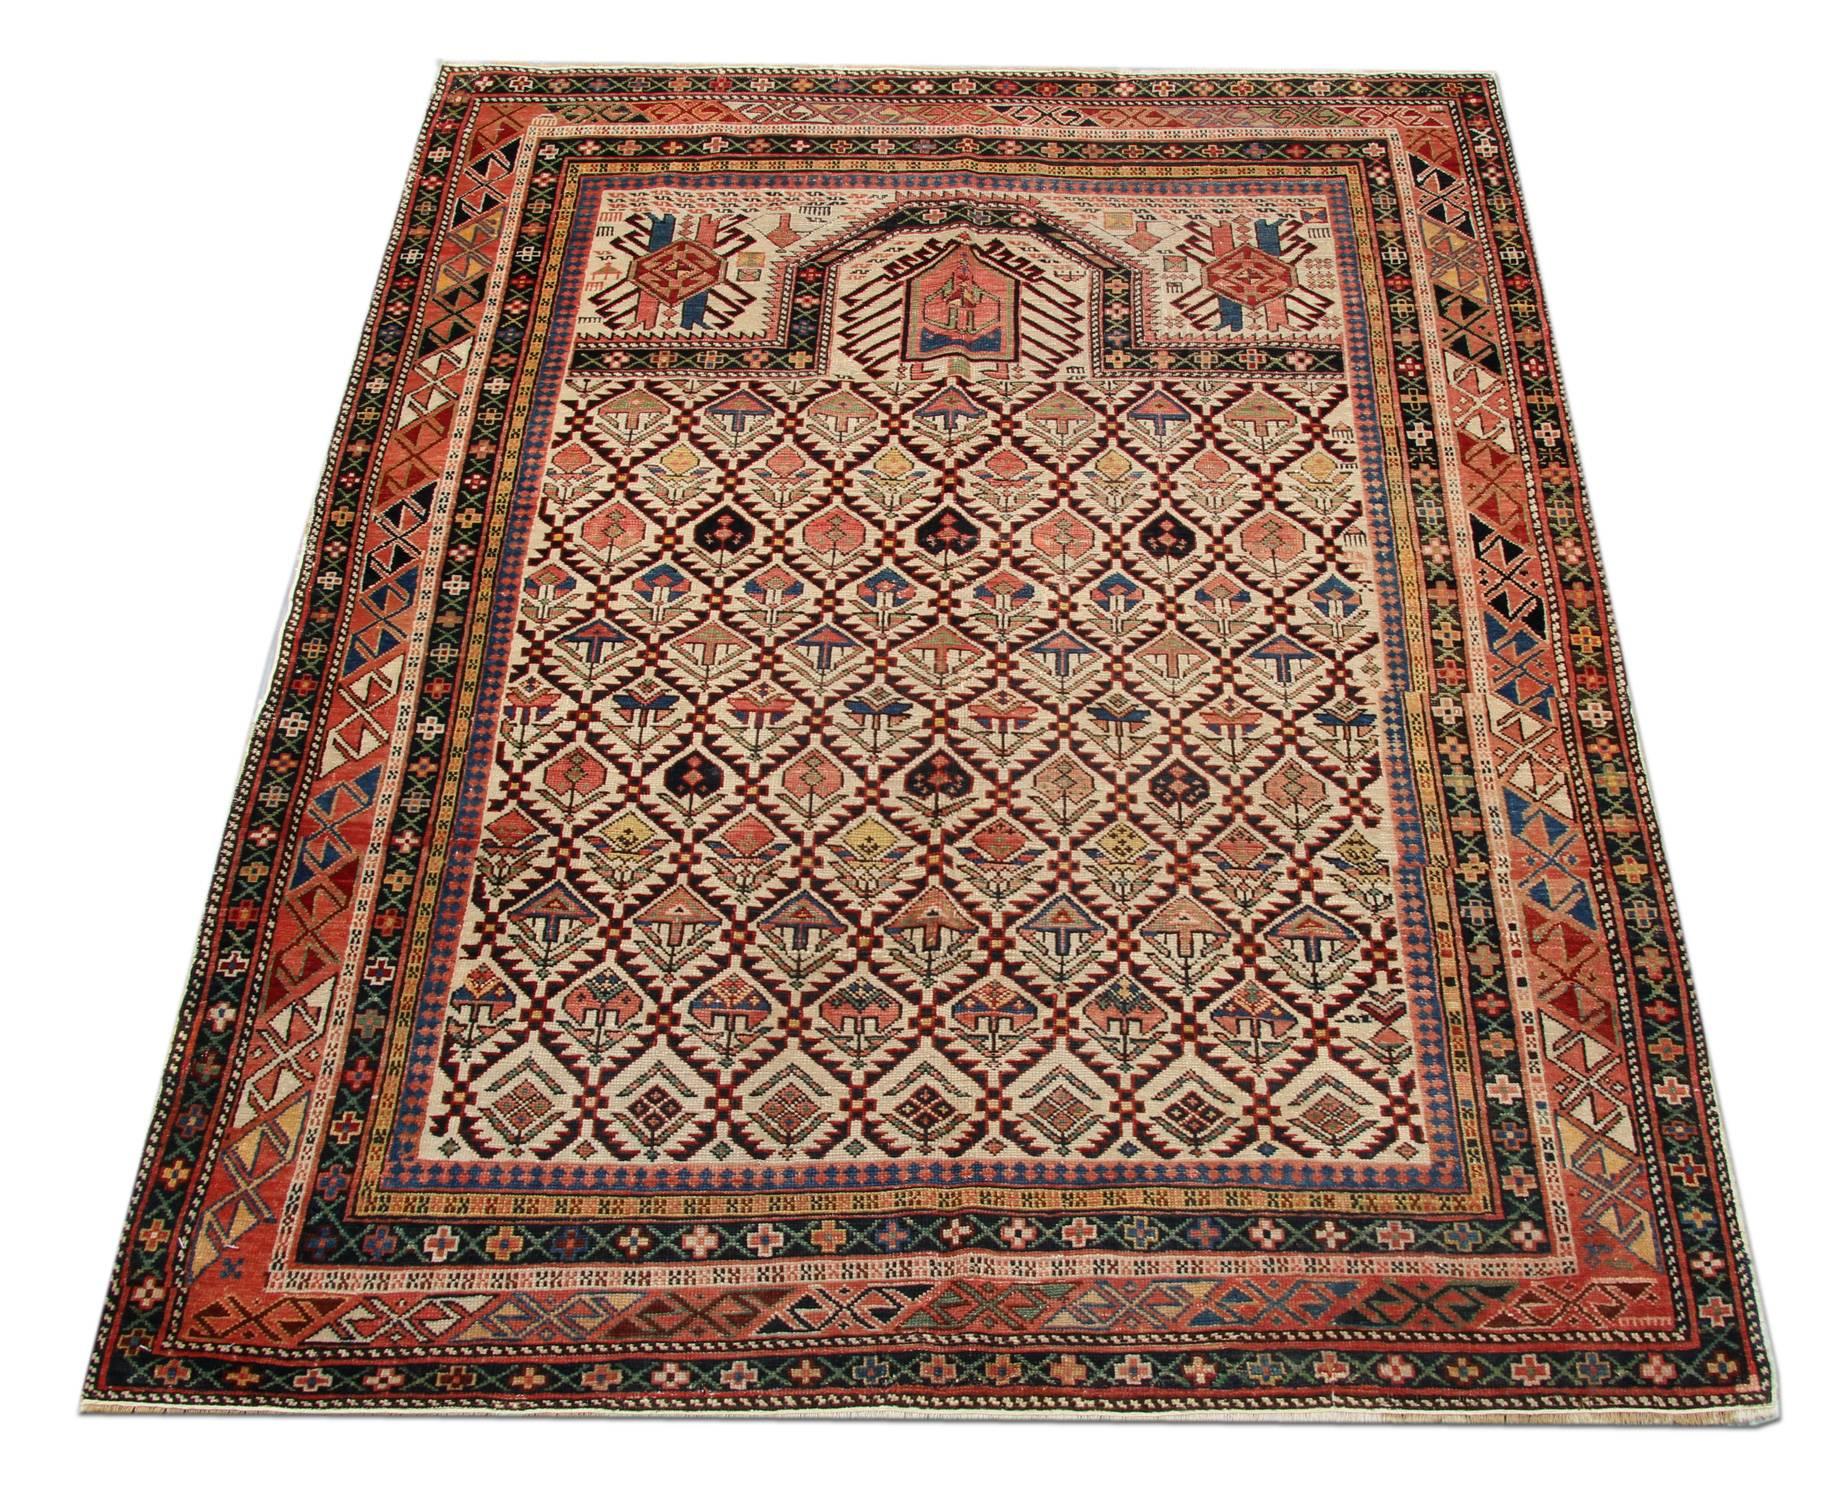 Ein hervorragendes Beispiel für einen handgefertigten kaukasischen Orientteppich aus der Region Schirwan. Obwohl diese elfenbeinfarbenen Teppiche mit Gebetsmustern aus der Ferne so aussehen mögen, hat dieser Webteppich eine große Farbpalette. Dieser